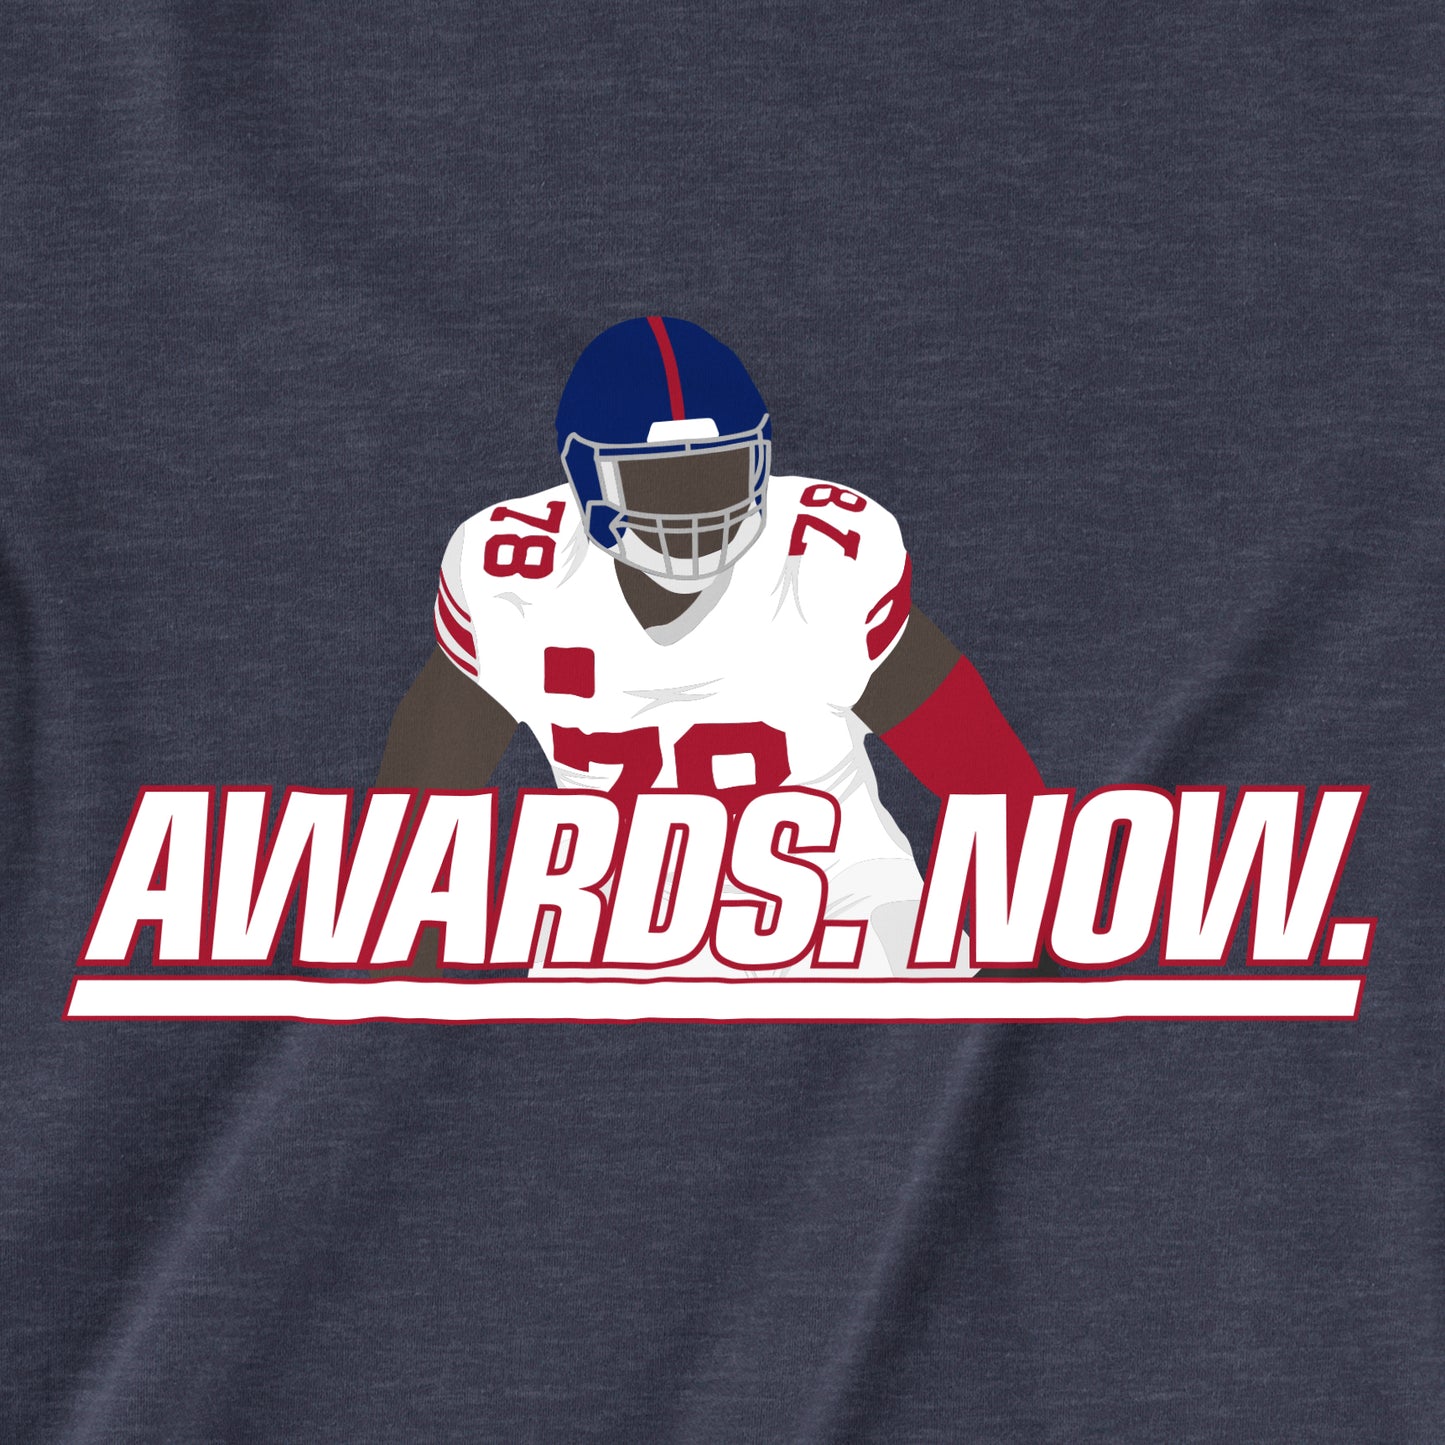 Awards. Now. | T-Shirt